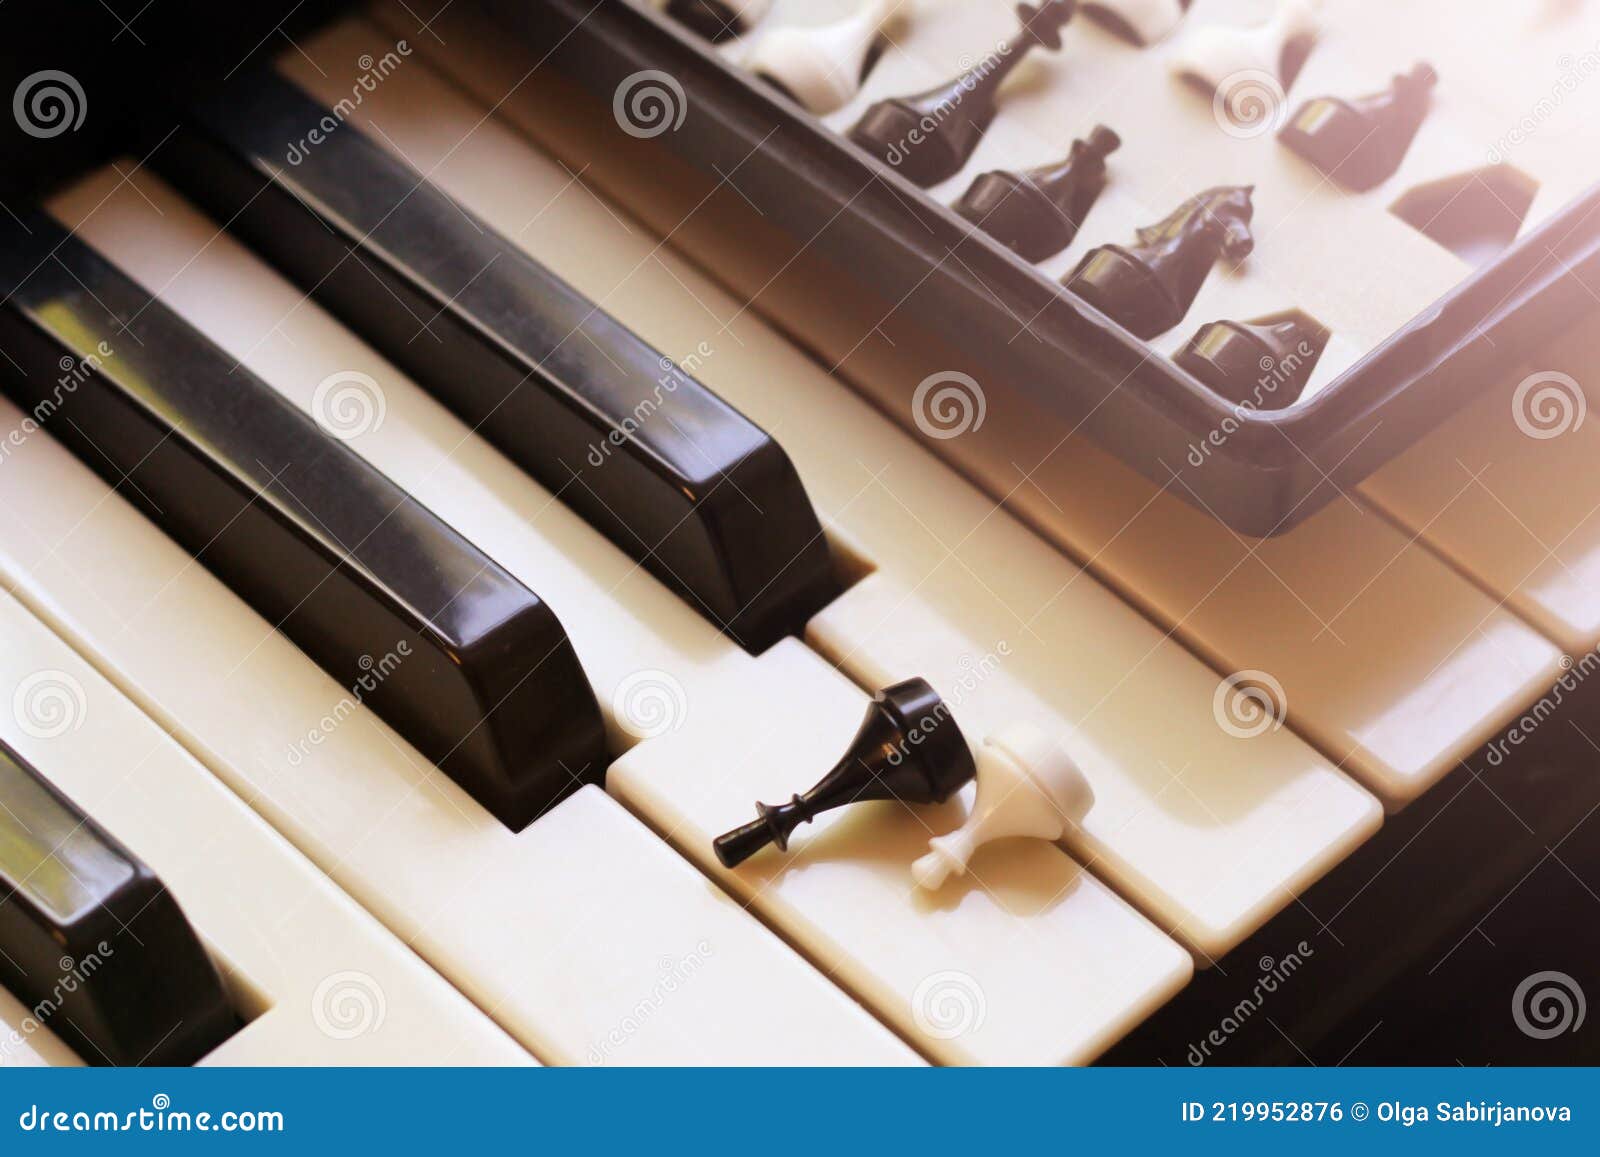 Chaves De Xadrez E Piano Tão Perto Imagem de Stock - Imagem de secado,  preto: 219983919